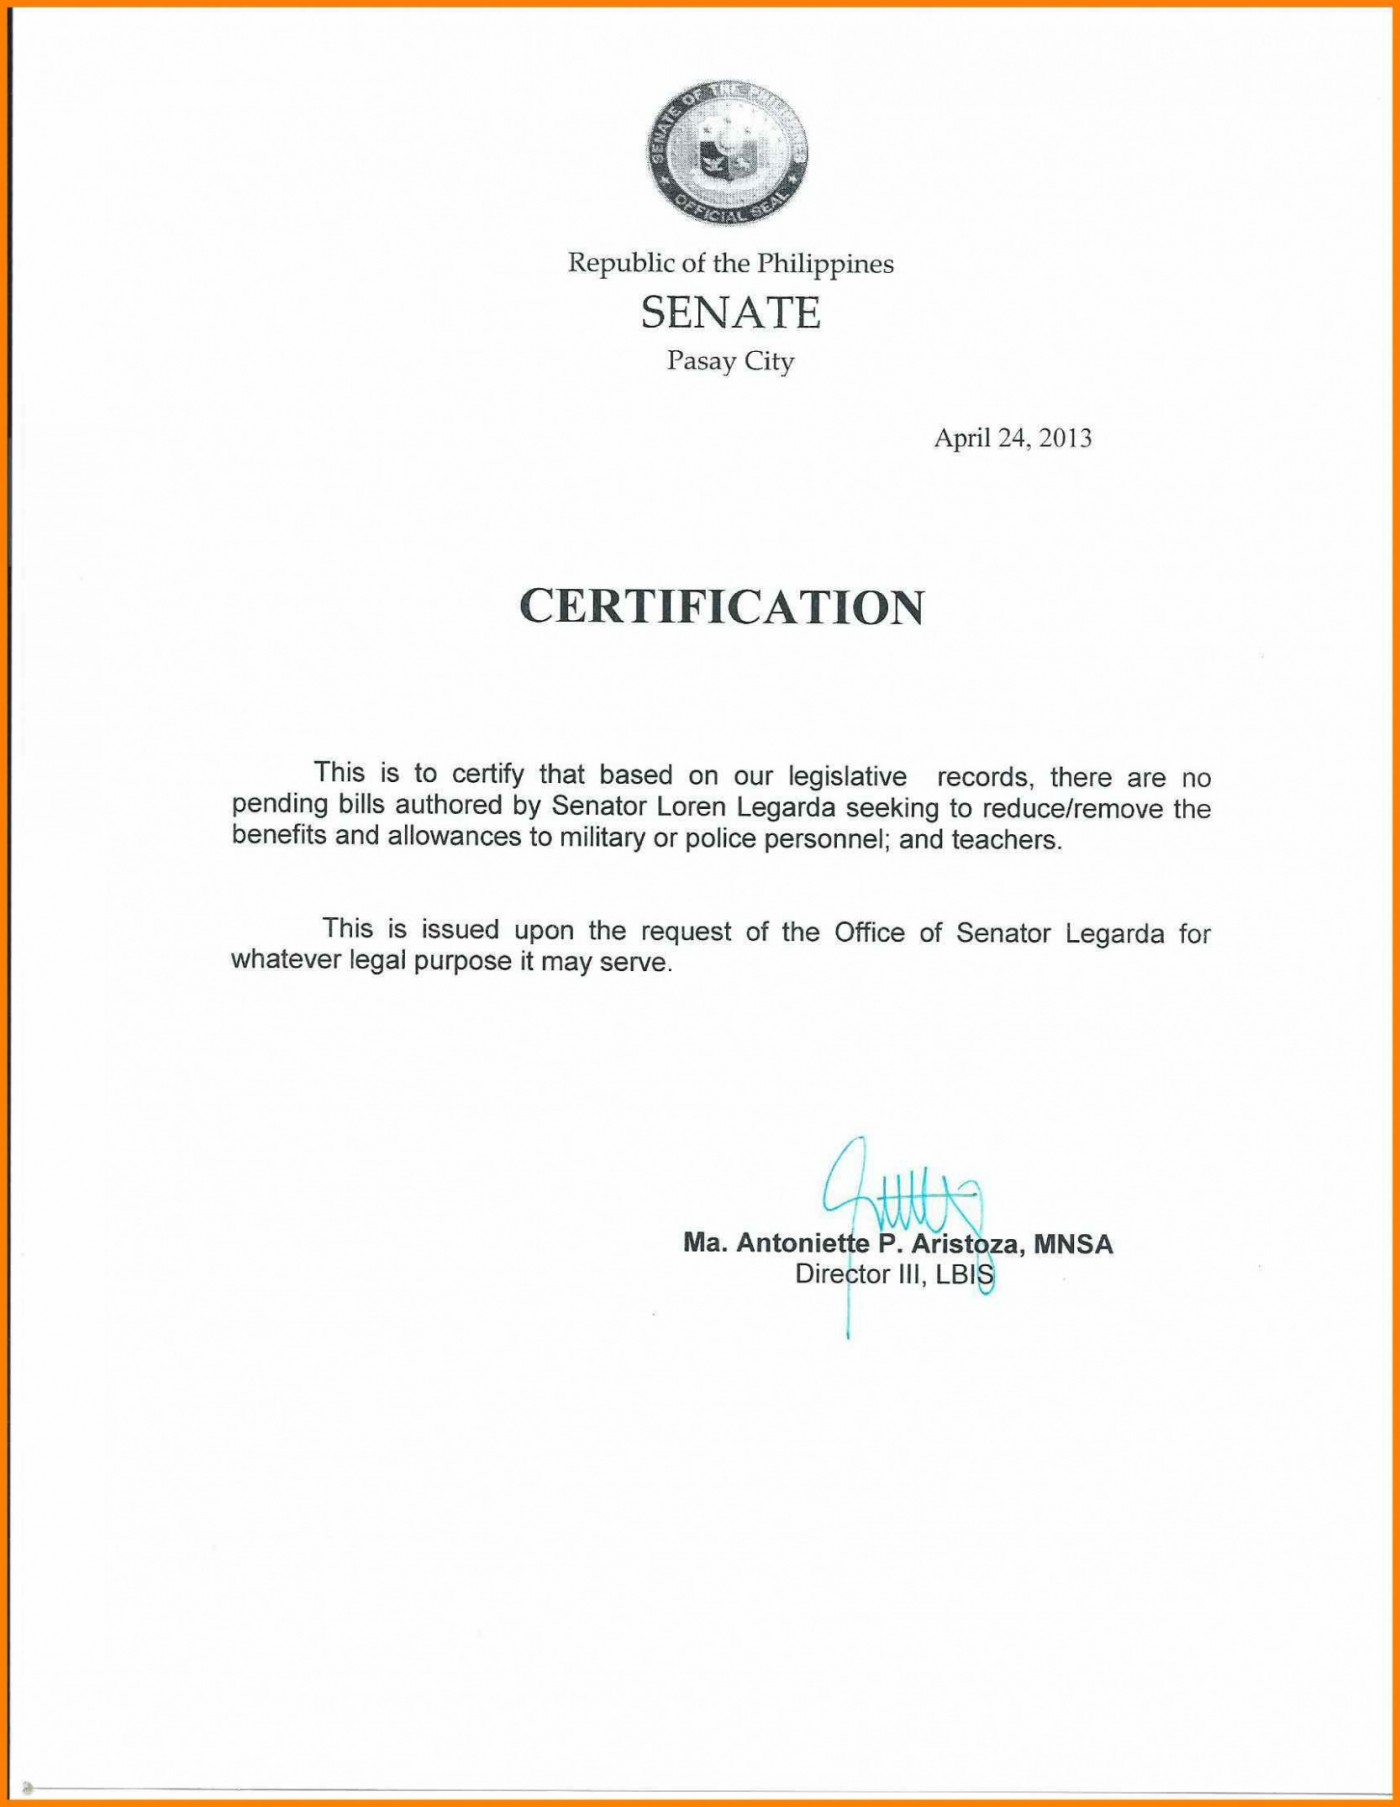 046 Certificate Of Employment Template Ideas Employee The With Regard To Template Of Certificate Of Employment